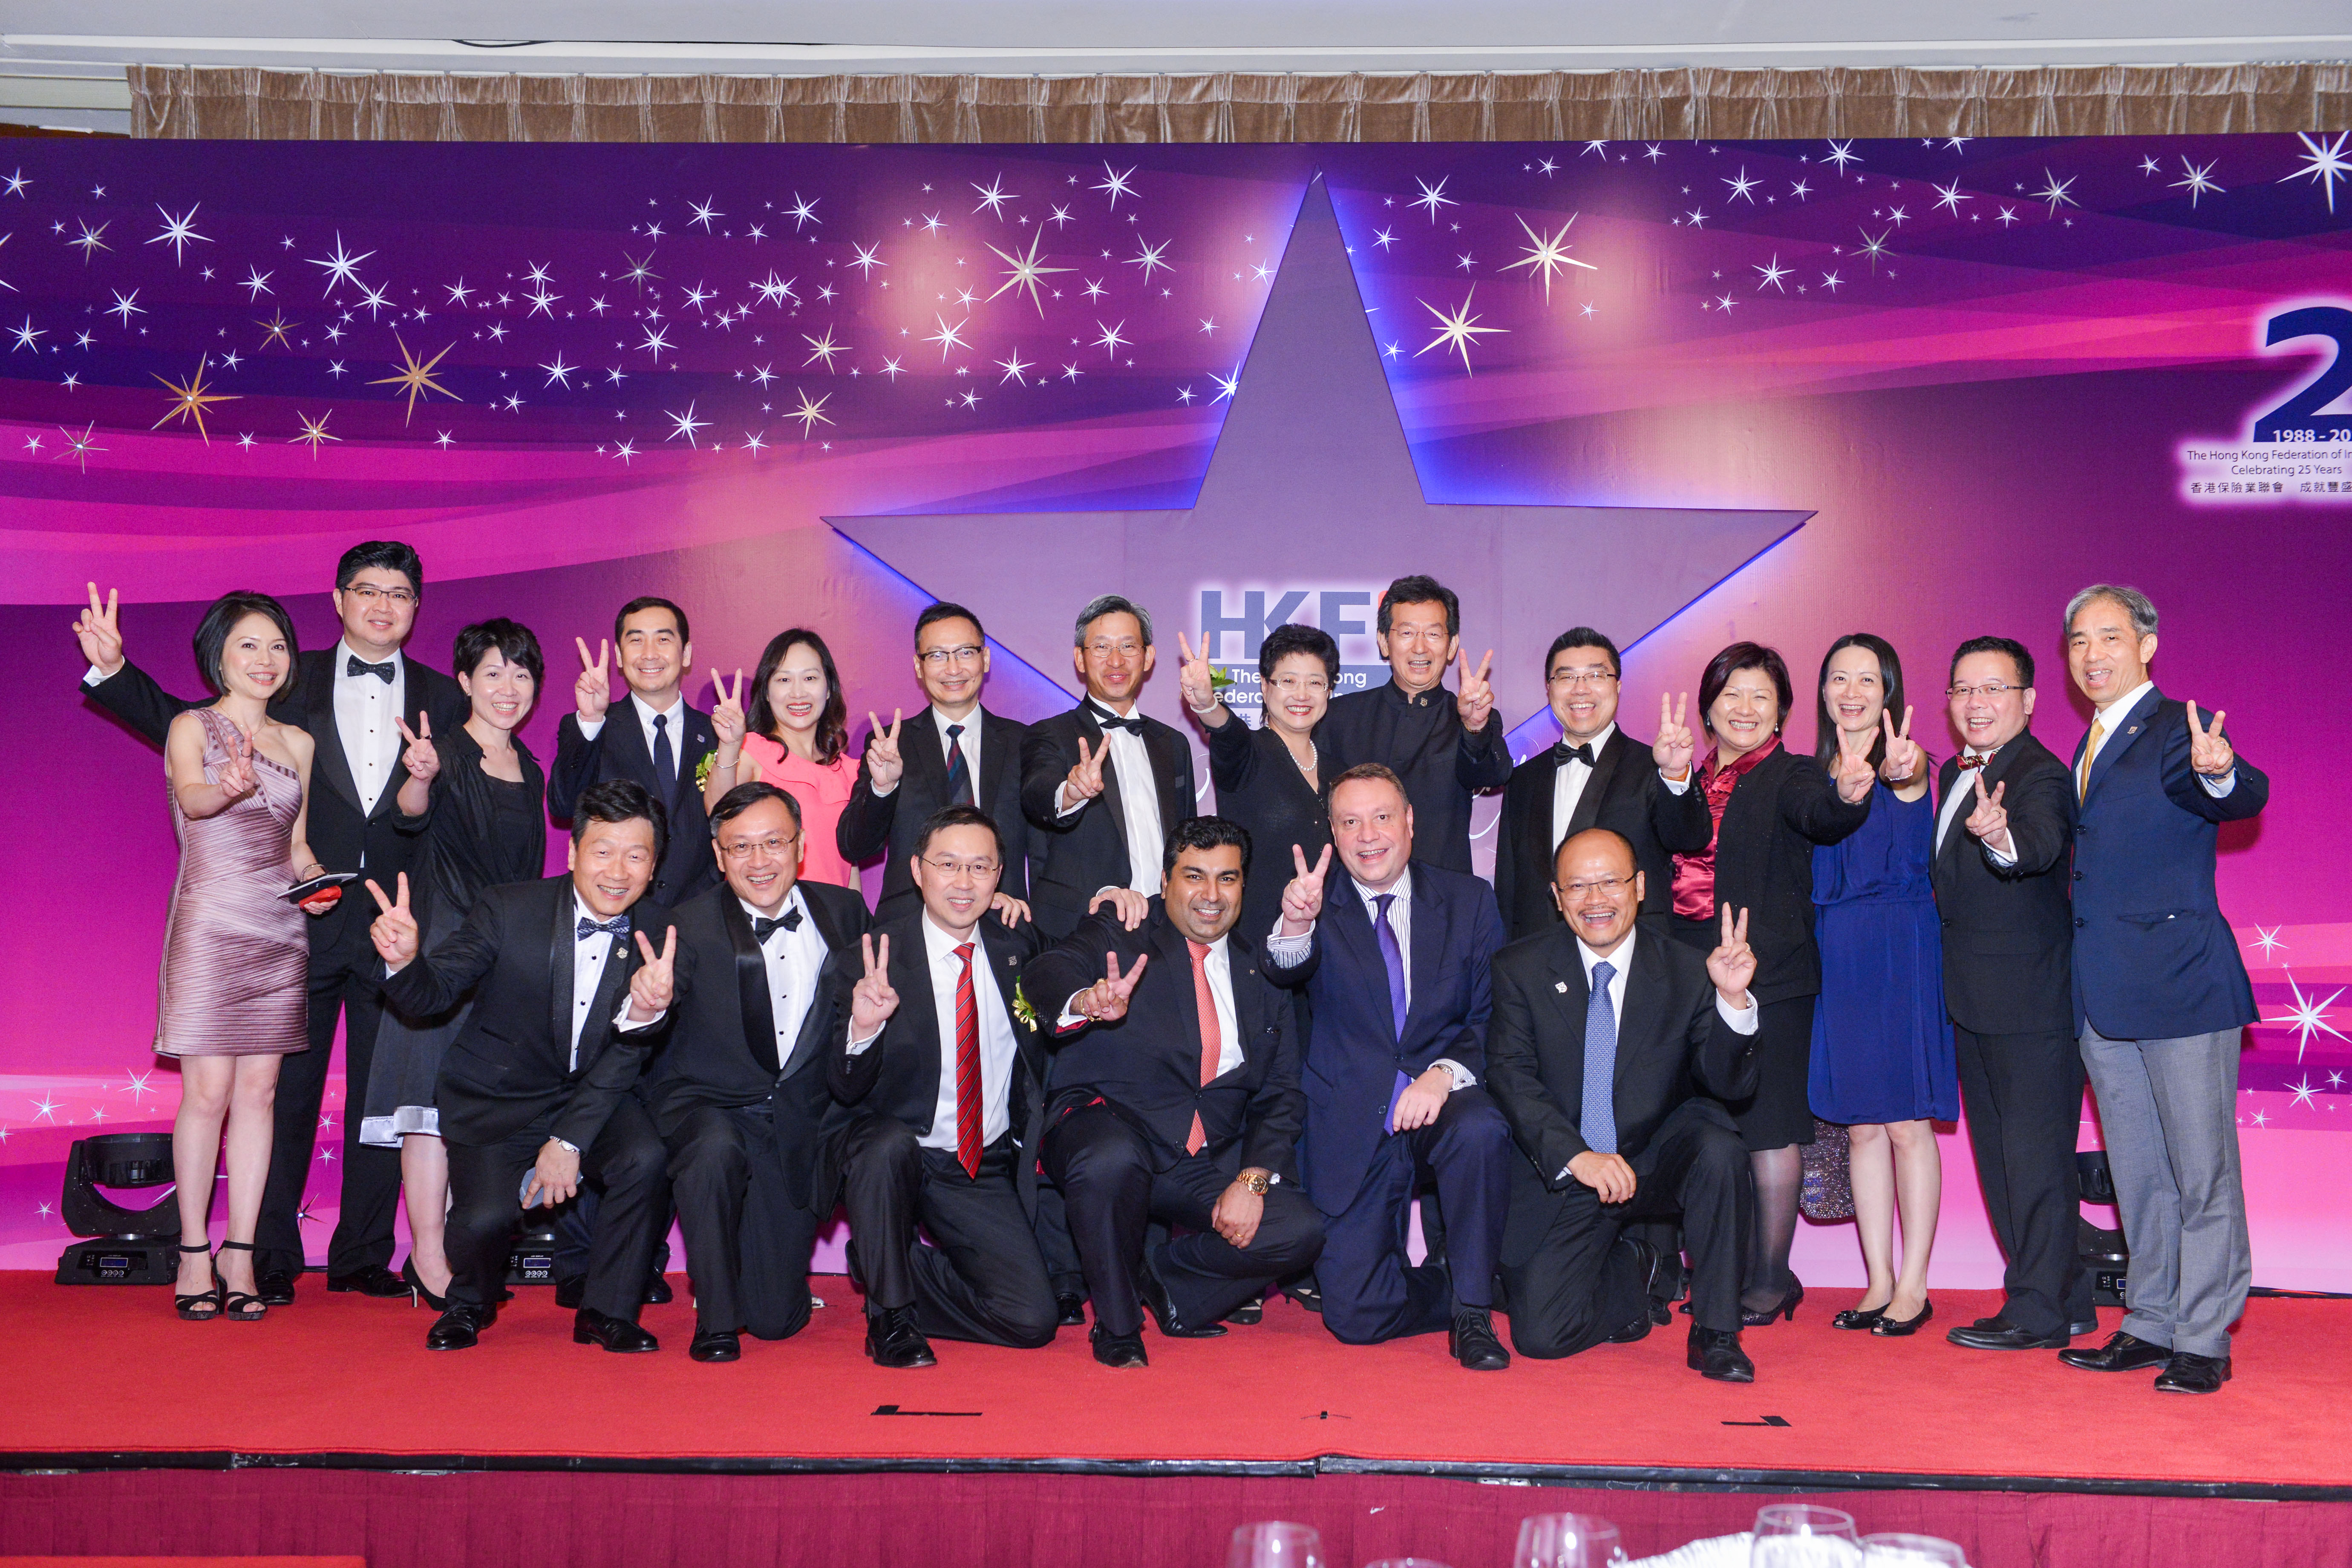 HKFI Celebrating 25 Years – Gala Dinner (3)